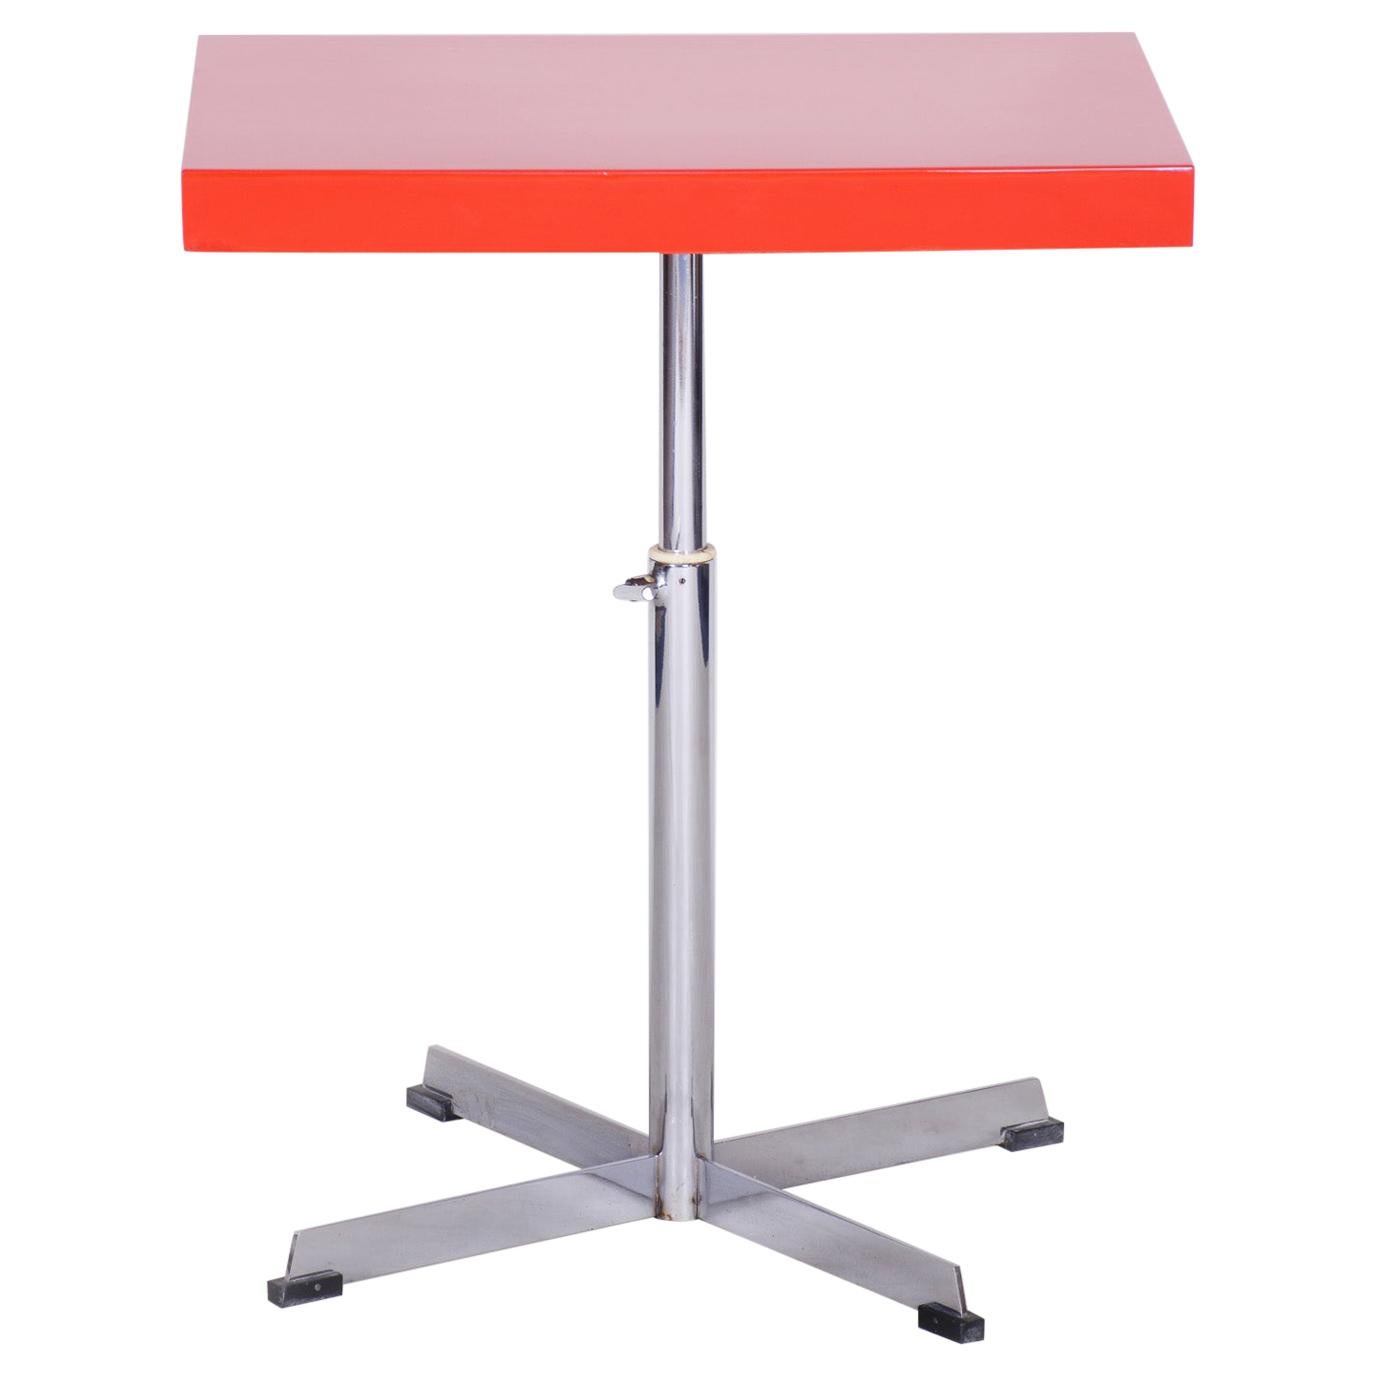 petite table Bauhaus du 20ème siècle:: restaurée:: en chrome rouge:: à hauteur réglable:: années 30